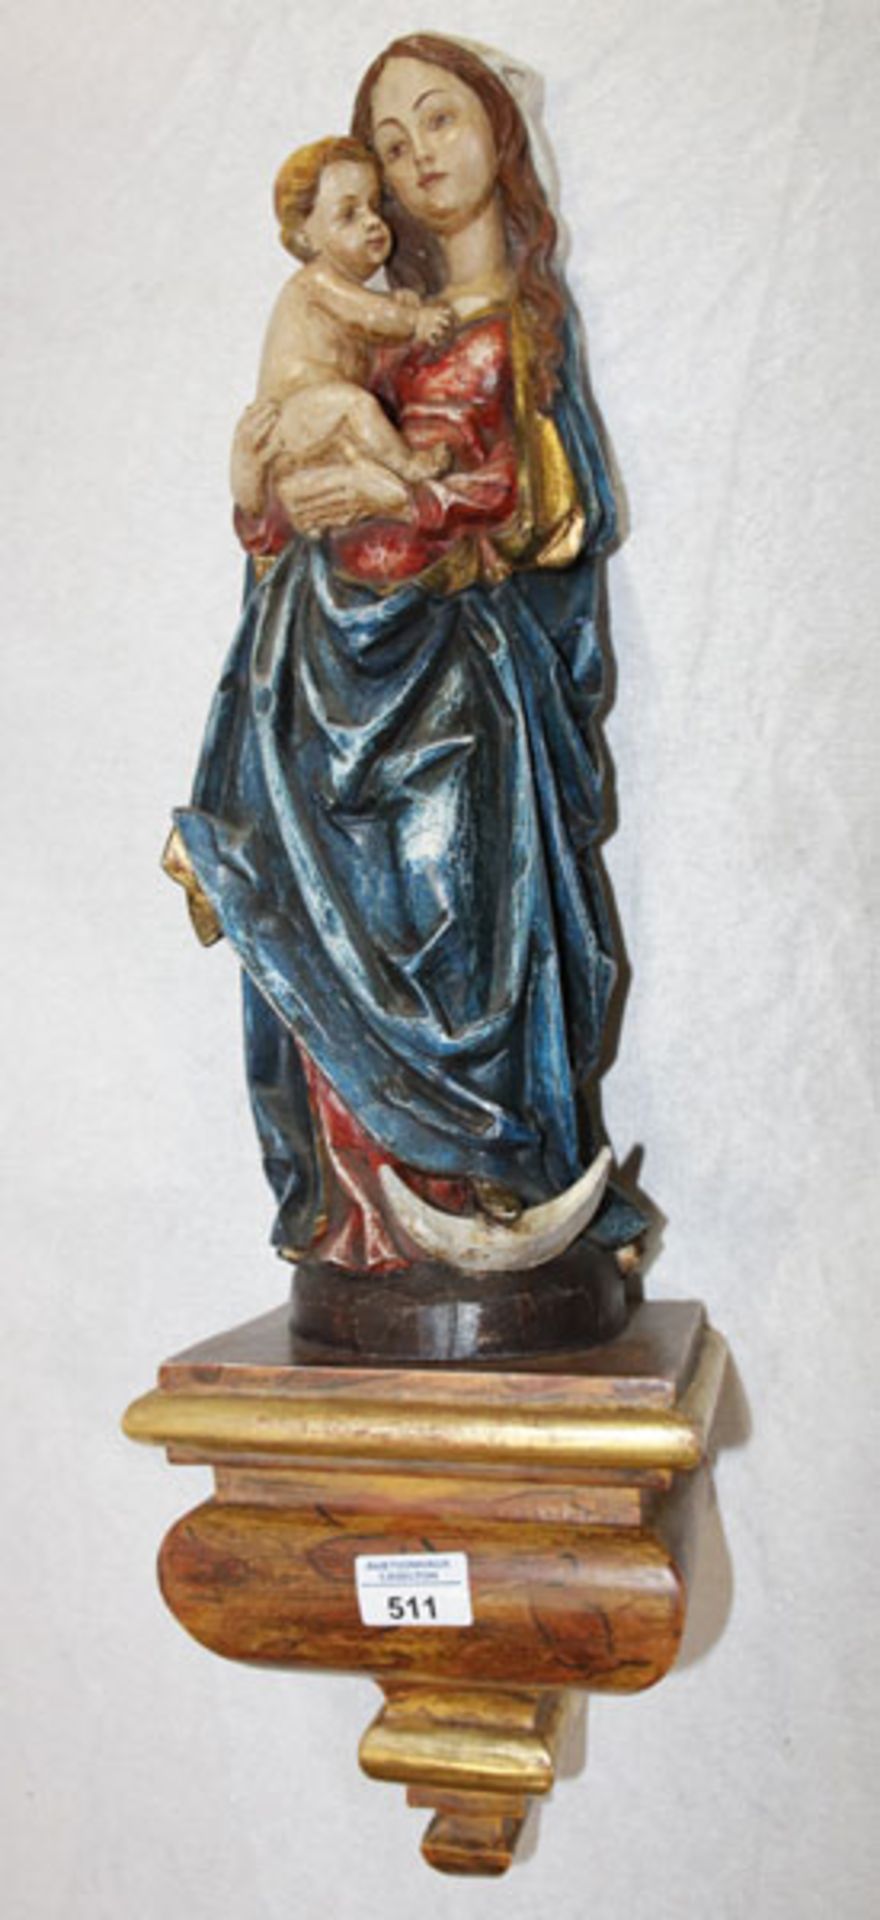 Holz Figurenskulptur 'Ramsauer Madonna', handgeschnitzt, farbig gefaßt, teils mit Blattgold,